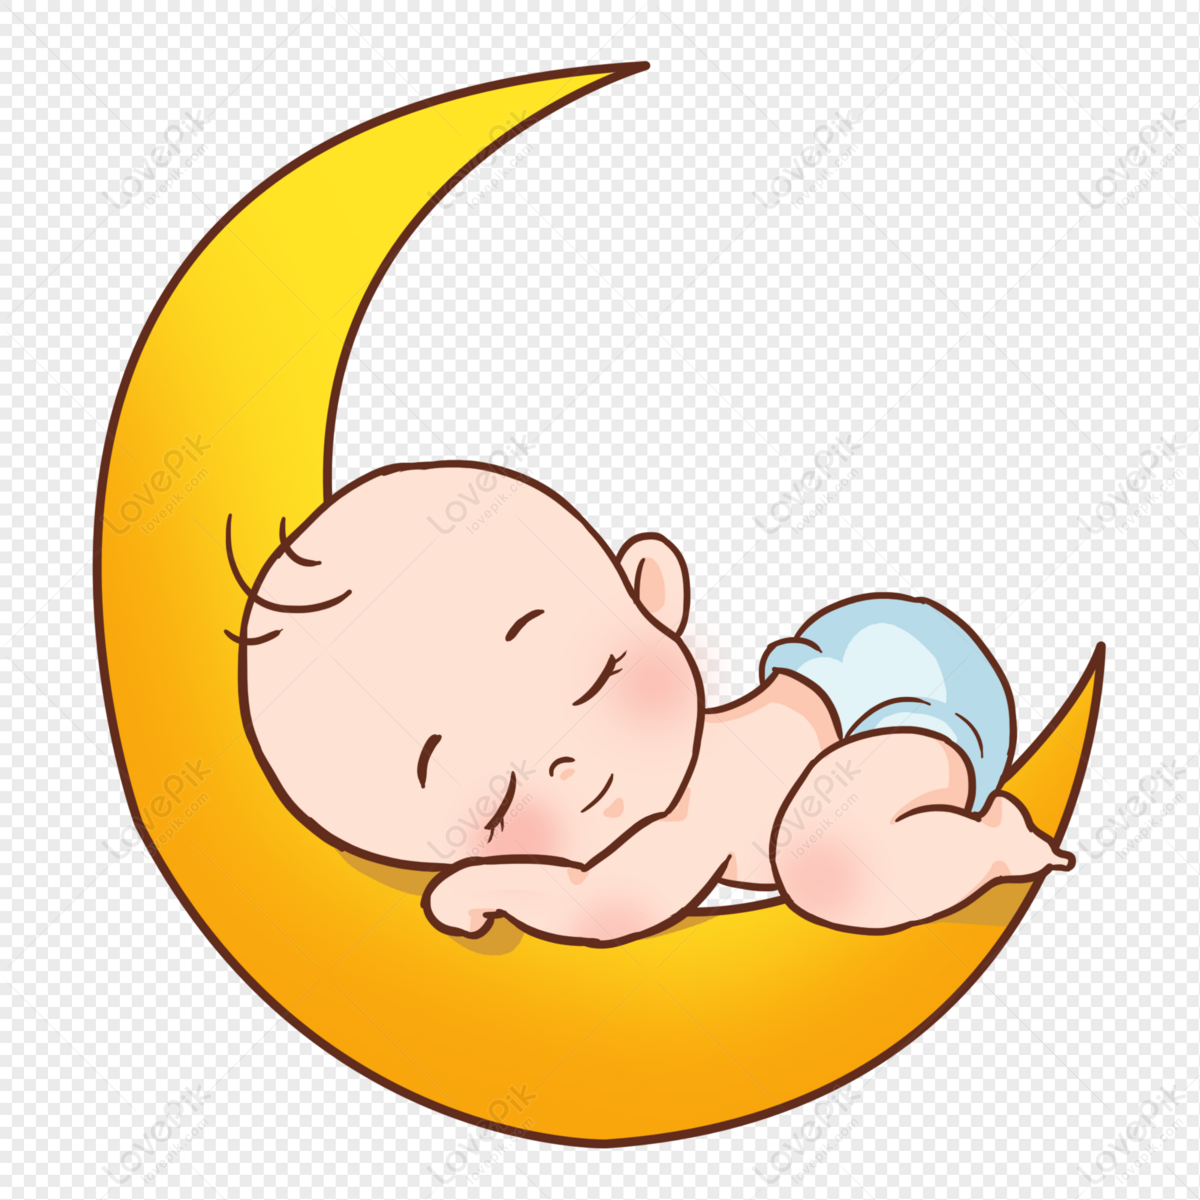 مرسومة باليد طفل نائم رسم وسادة وردية, طفل, مرسومة باليد, طفلة نائمة PNG والمتجهات للتحميل مجانا